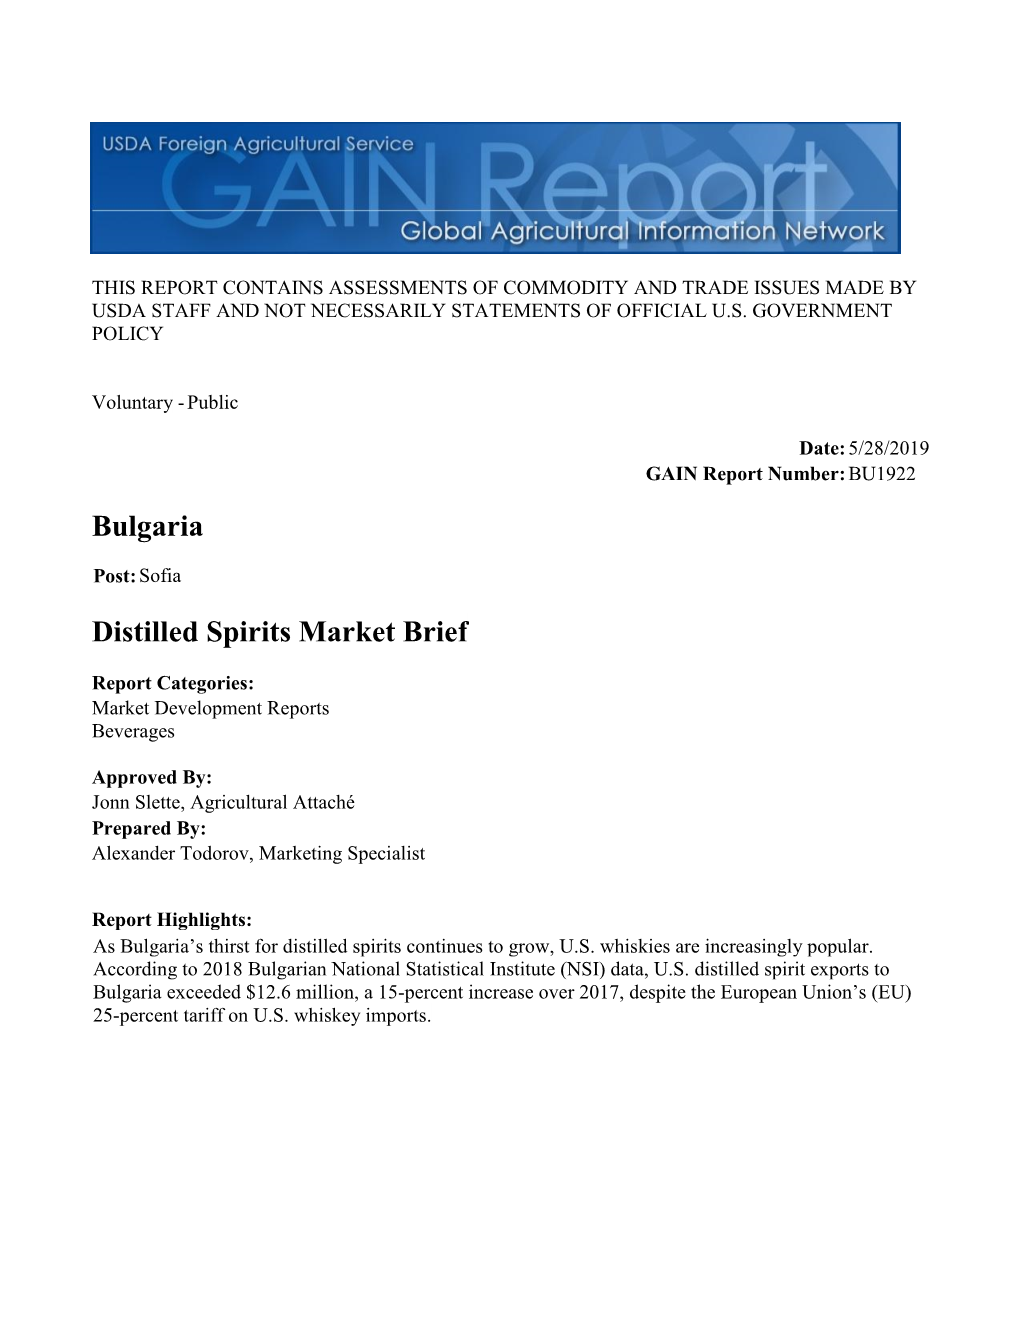 Bulgaria Distilled Spirits Market Brief